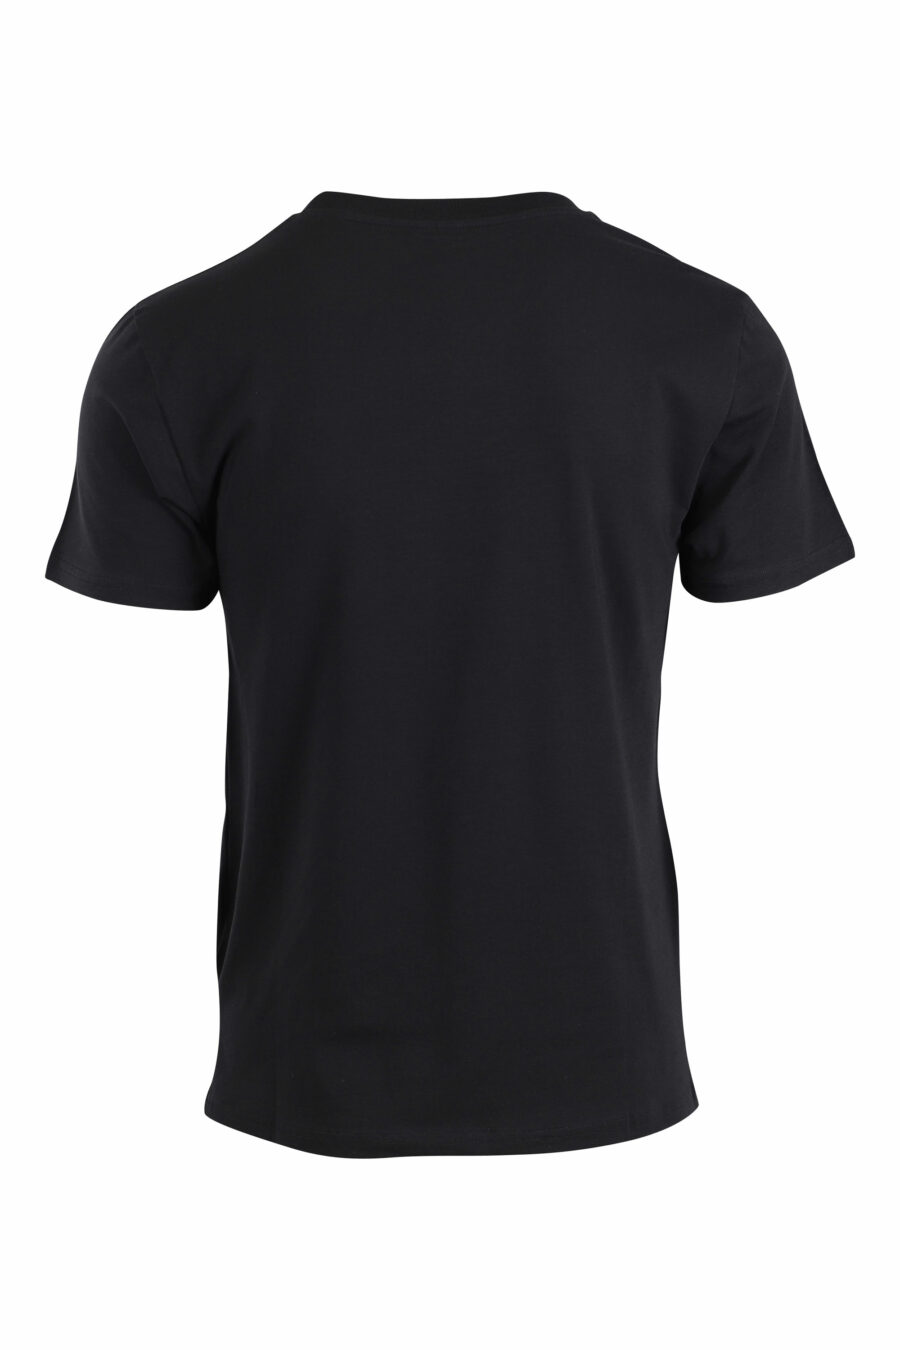 T-shirt schwarz mit kleinem goldenen Logo mit Strasssteinen - IMG 2649